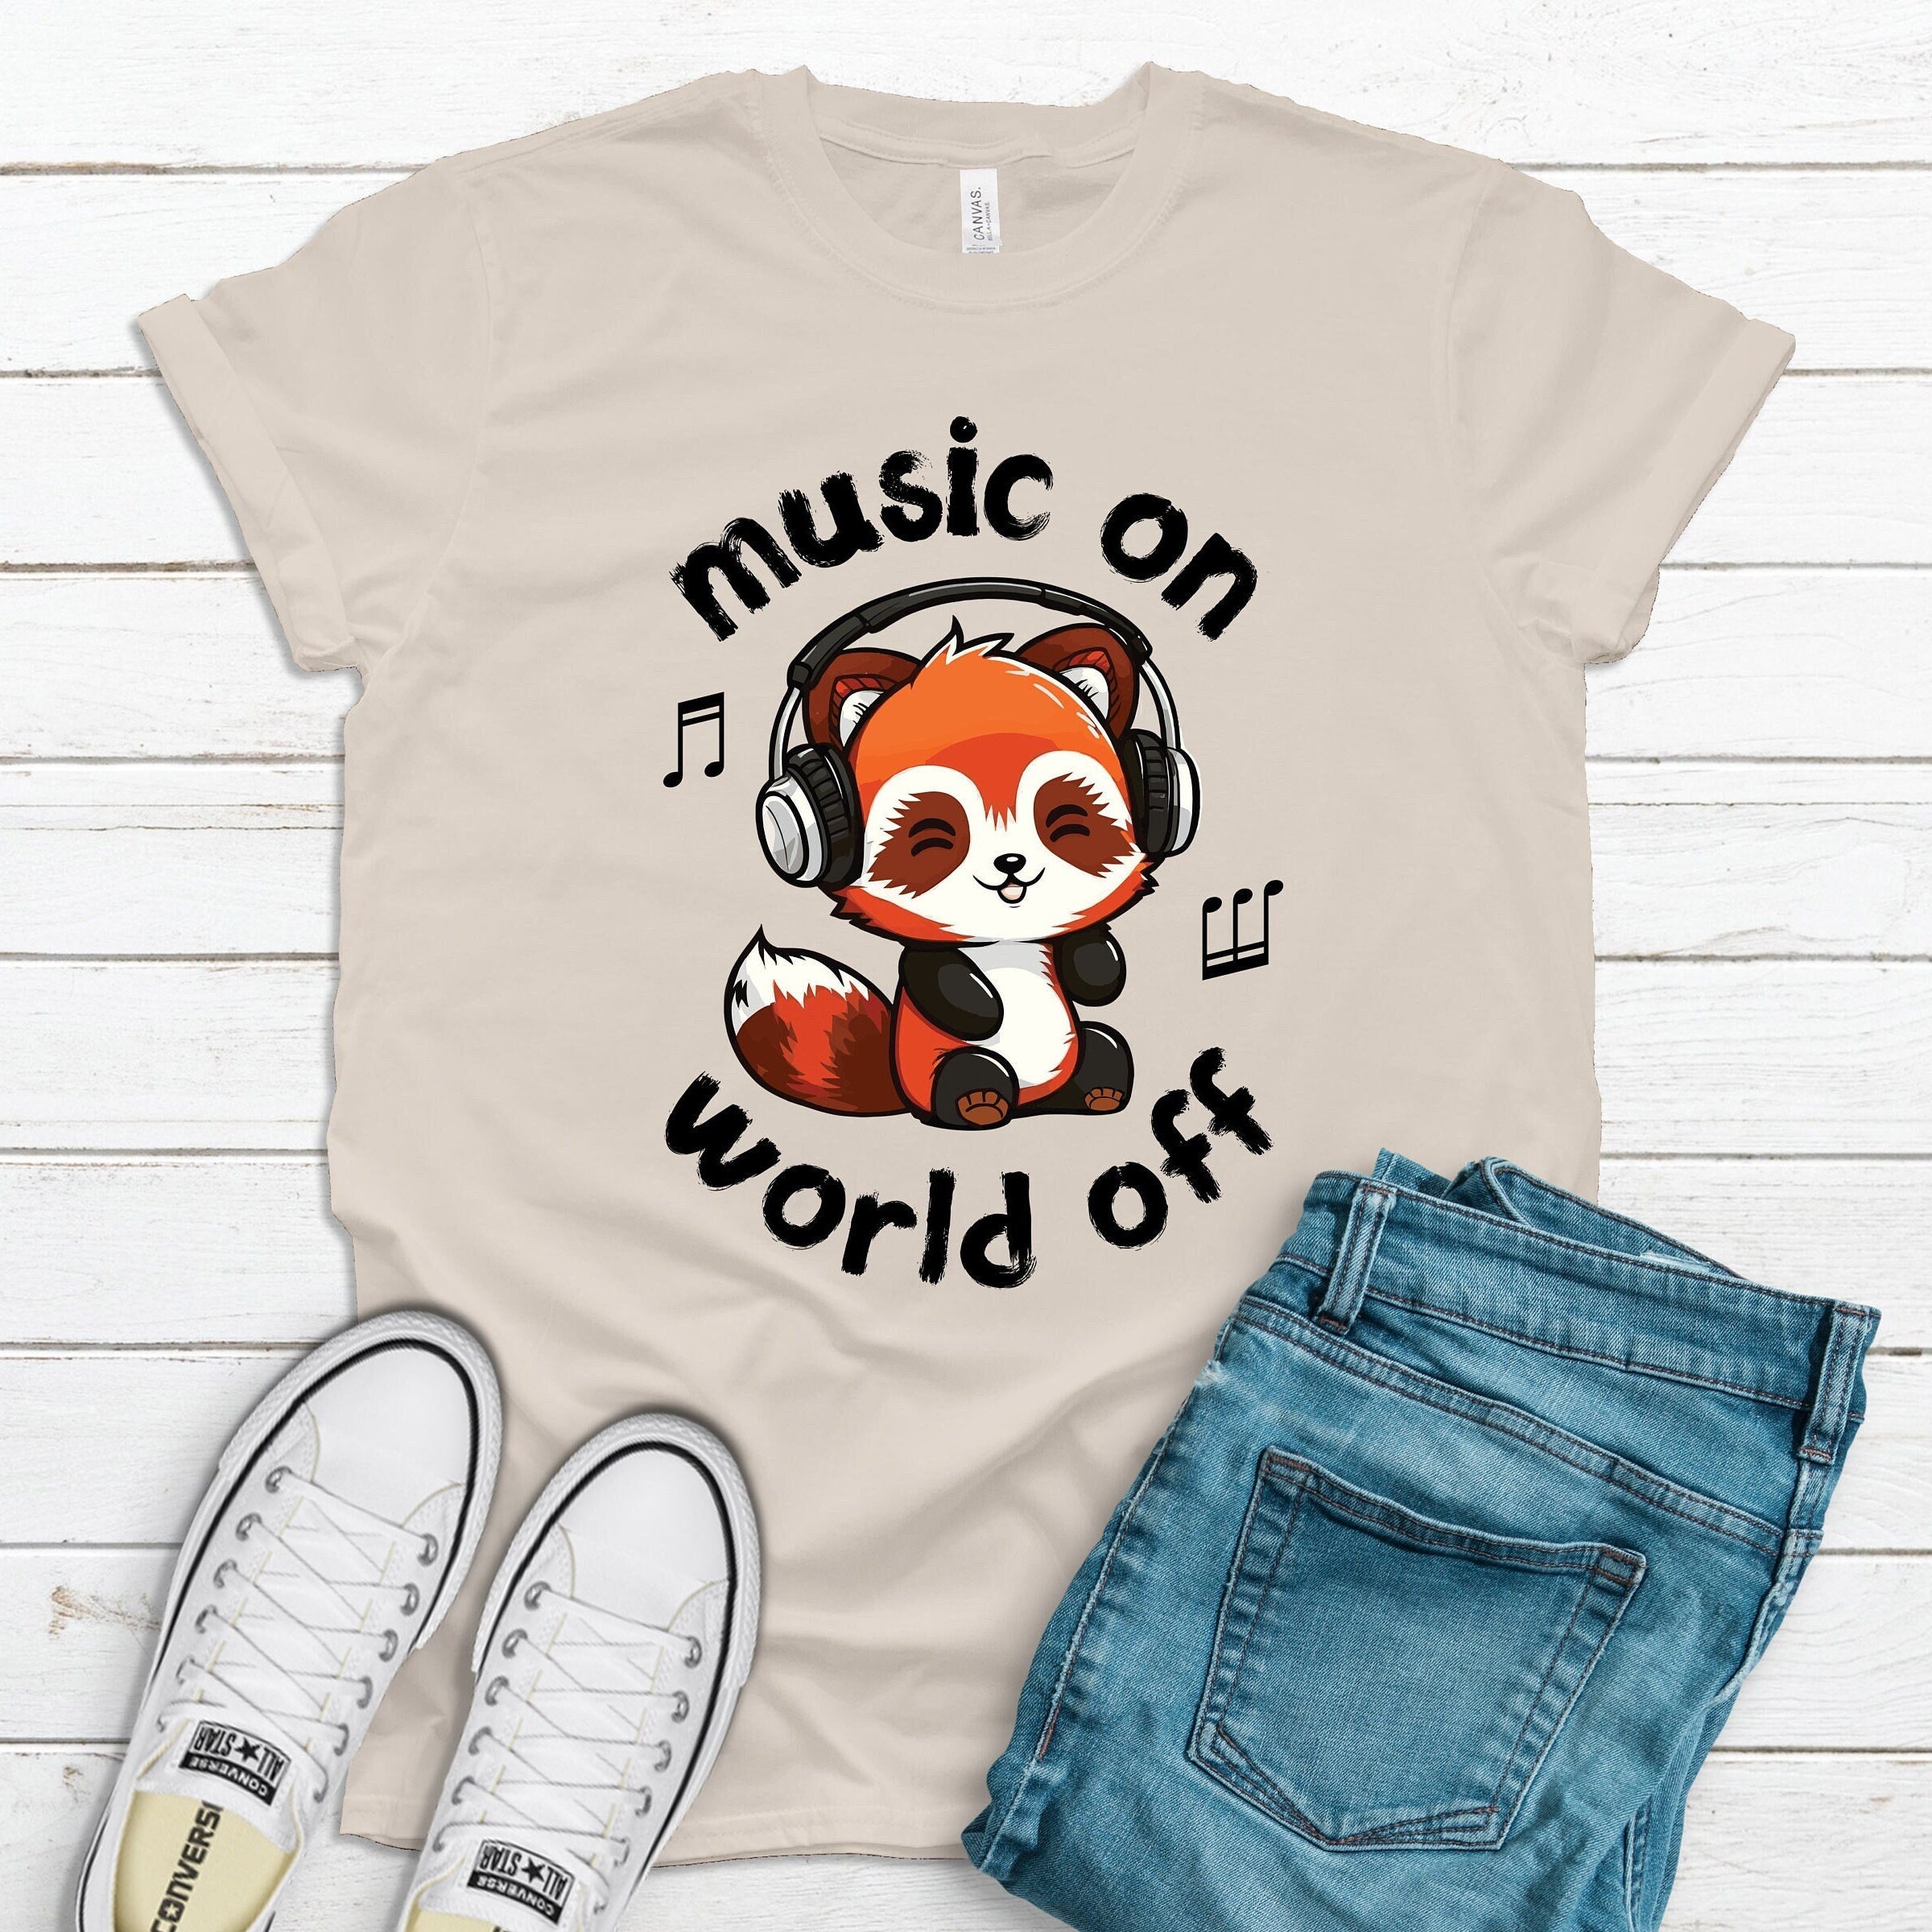 t-shirt com desenho de panda triste - TenStickers